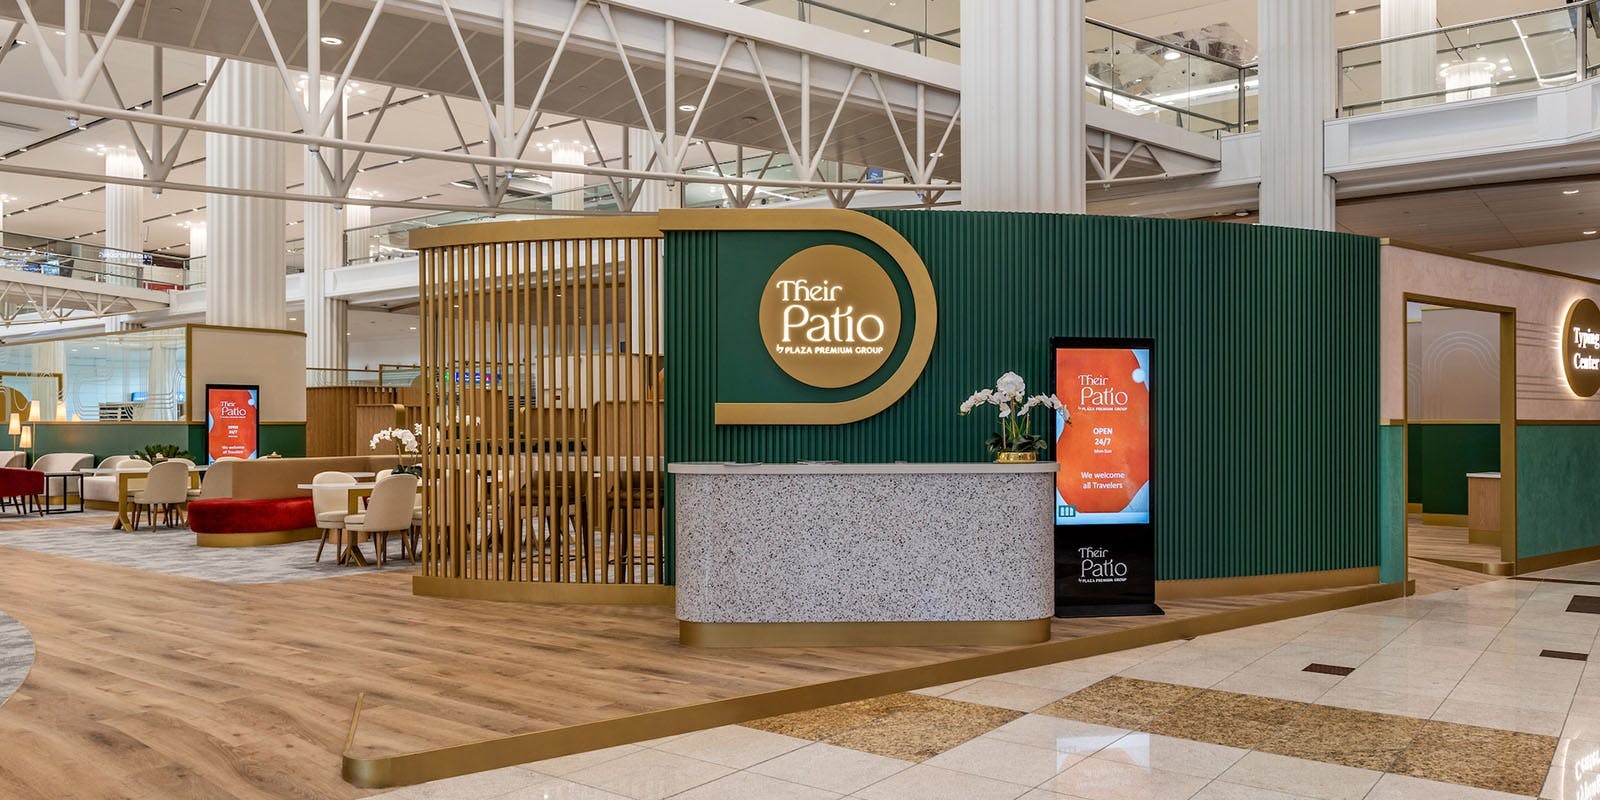 Aeropuerto Internacional de Dubái (Llegadas) Entradas para grupos Their Patio by Plaza Premium